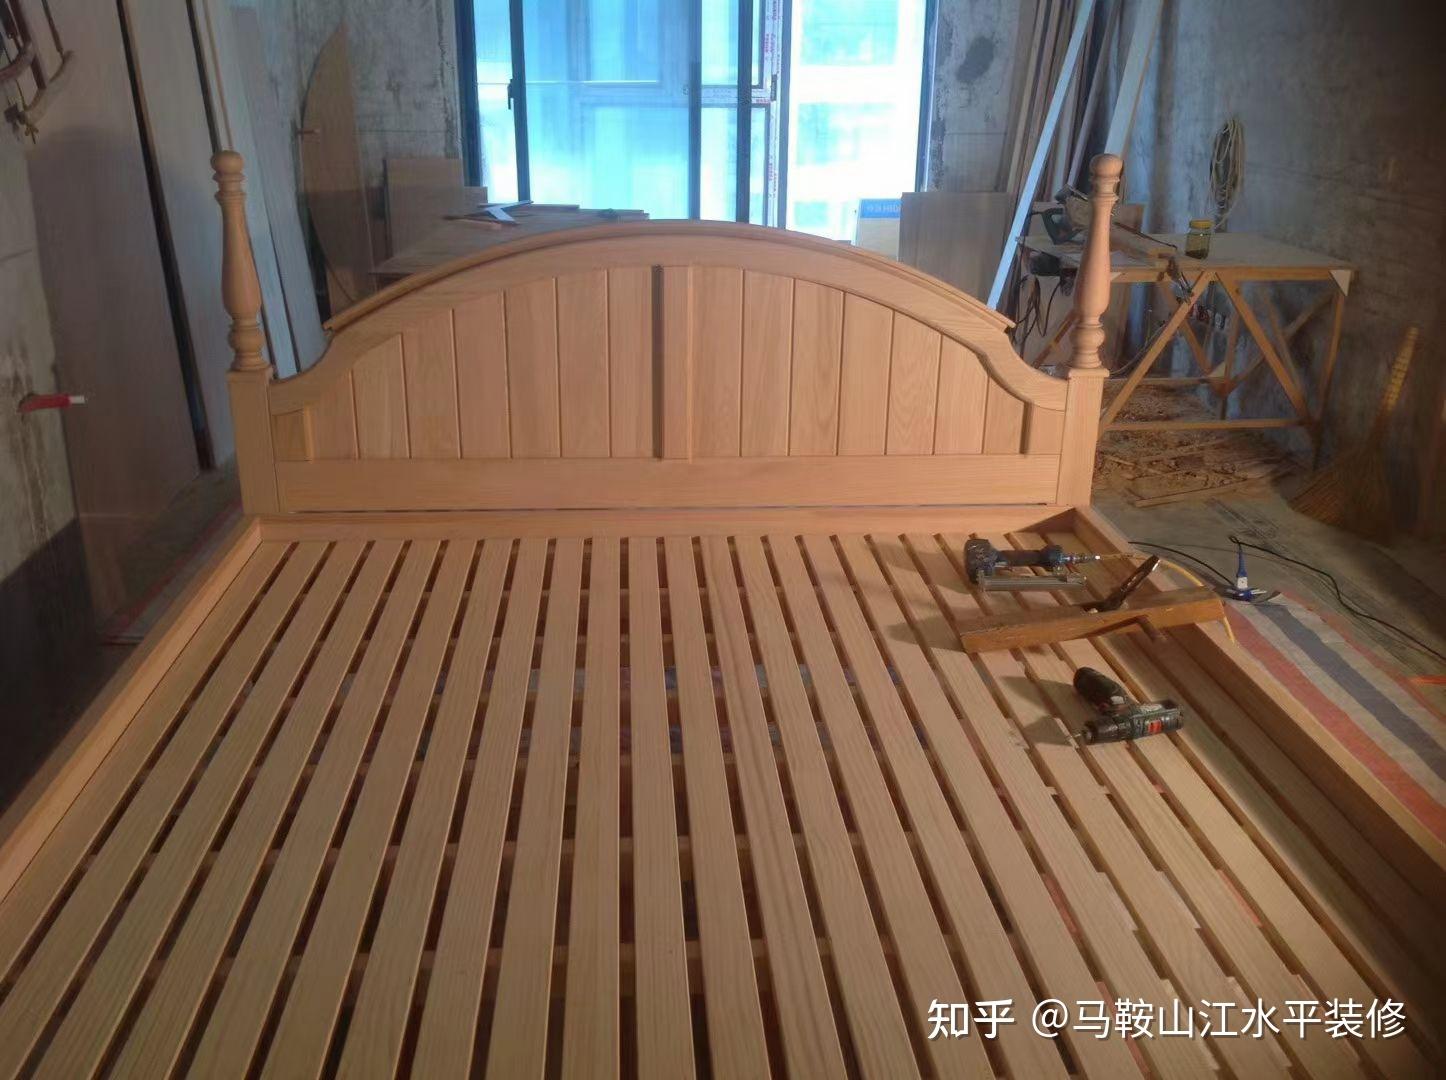 木工师傅做的床 